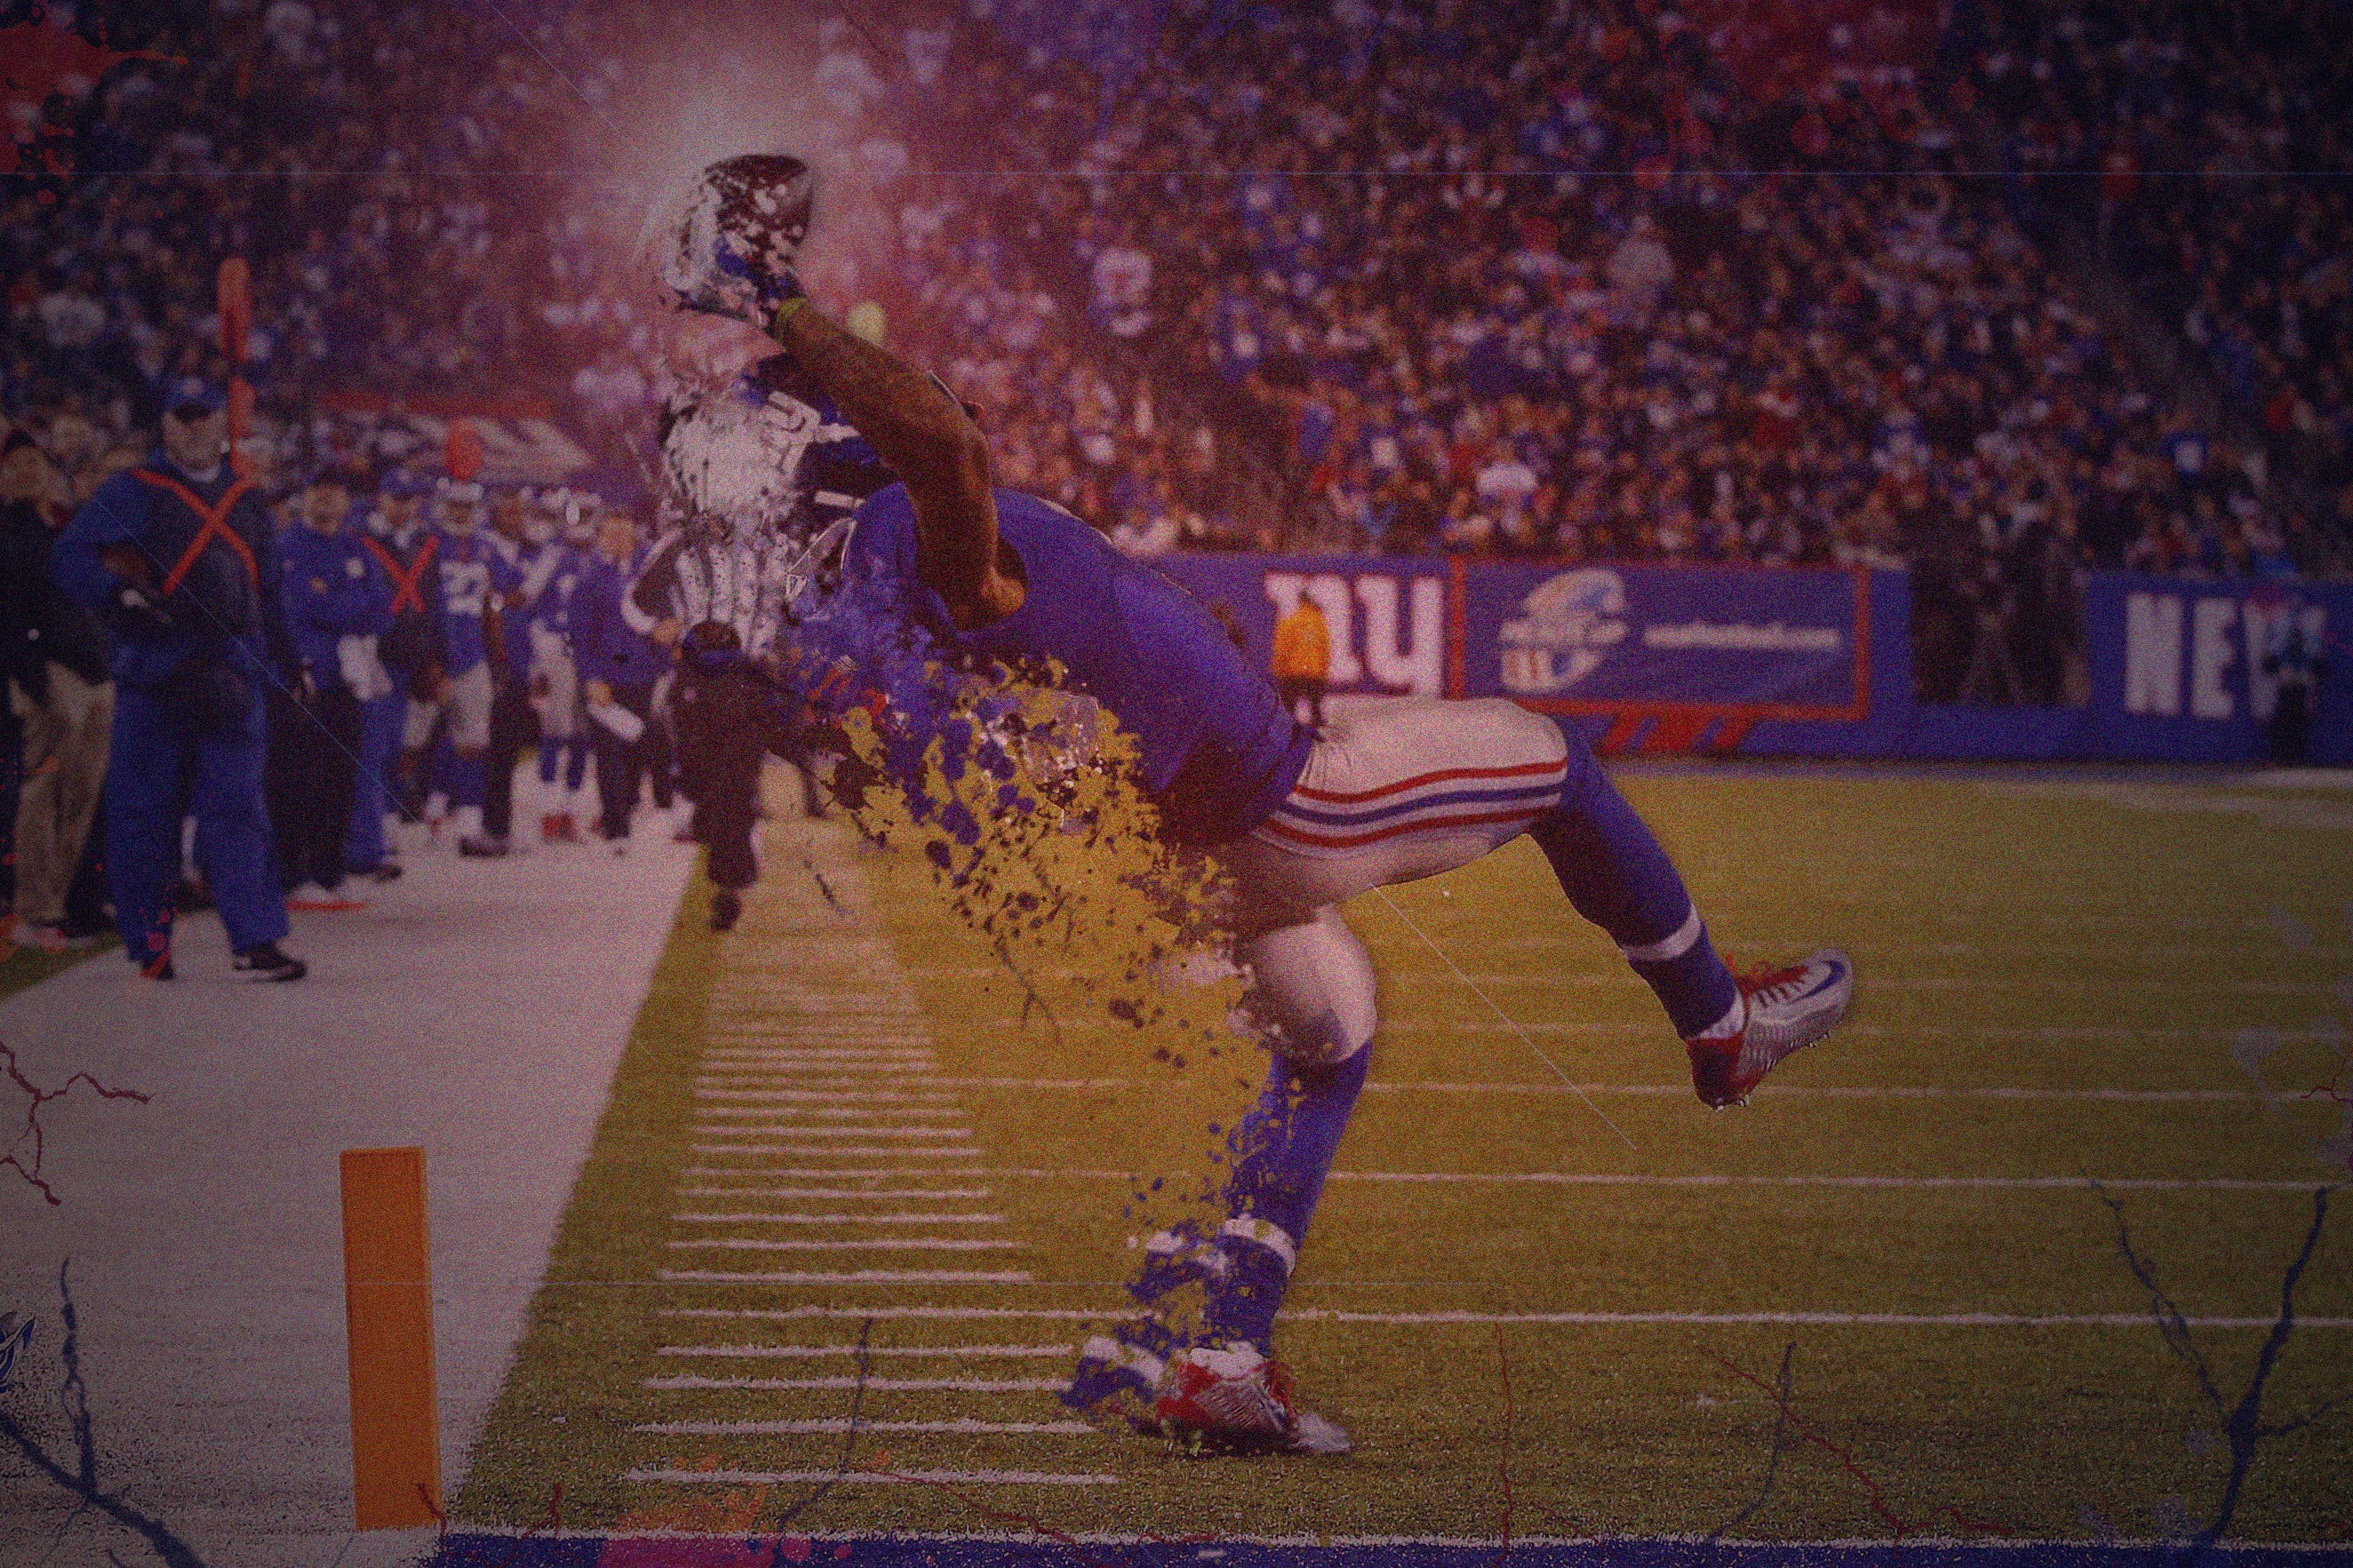 2648x1765 New York Giants wallpaper, NFL, American football, balls, Odell Beckham Jr  HD